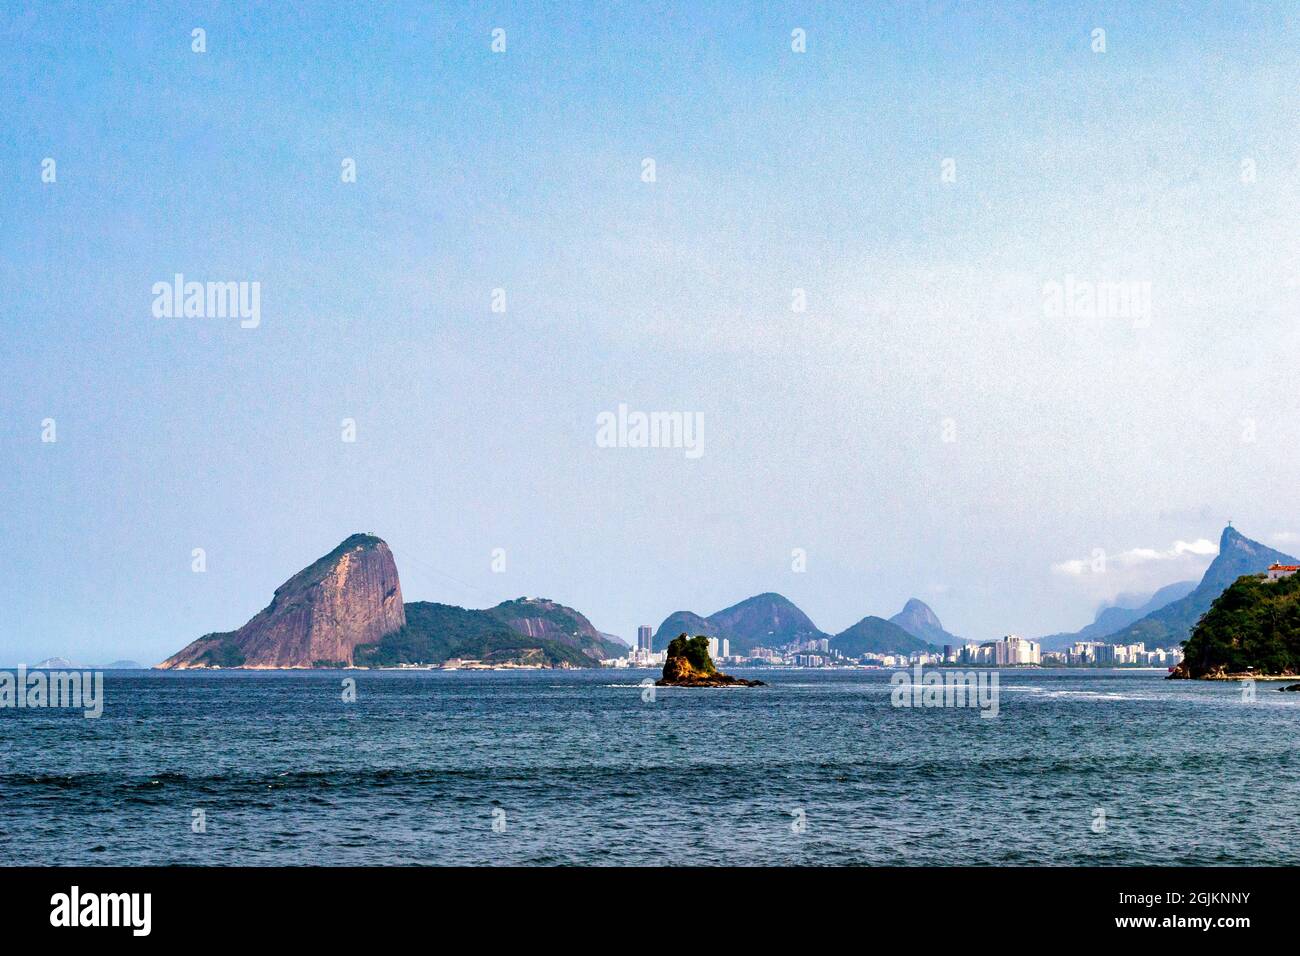 Le montagne di Icarai Beach che si trova nella parte sud di Nitreoi, Rio de Janeiro, Brasile. Foto Stock